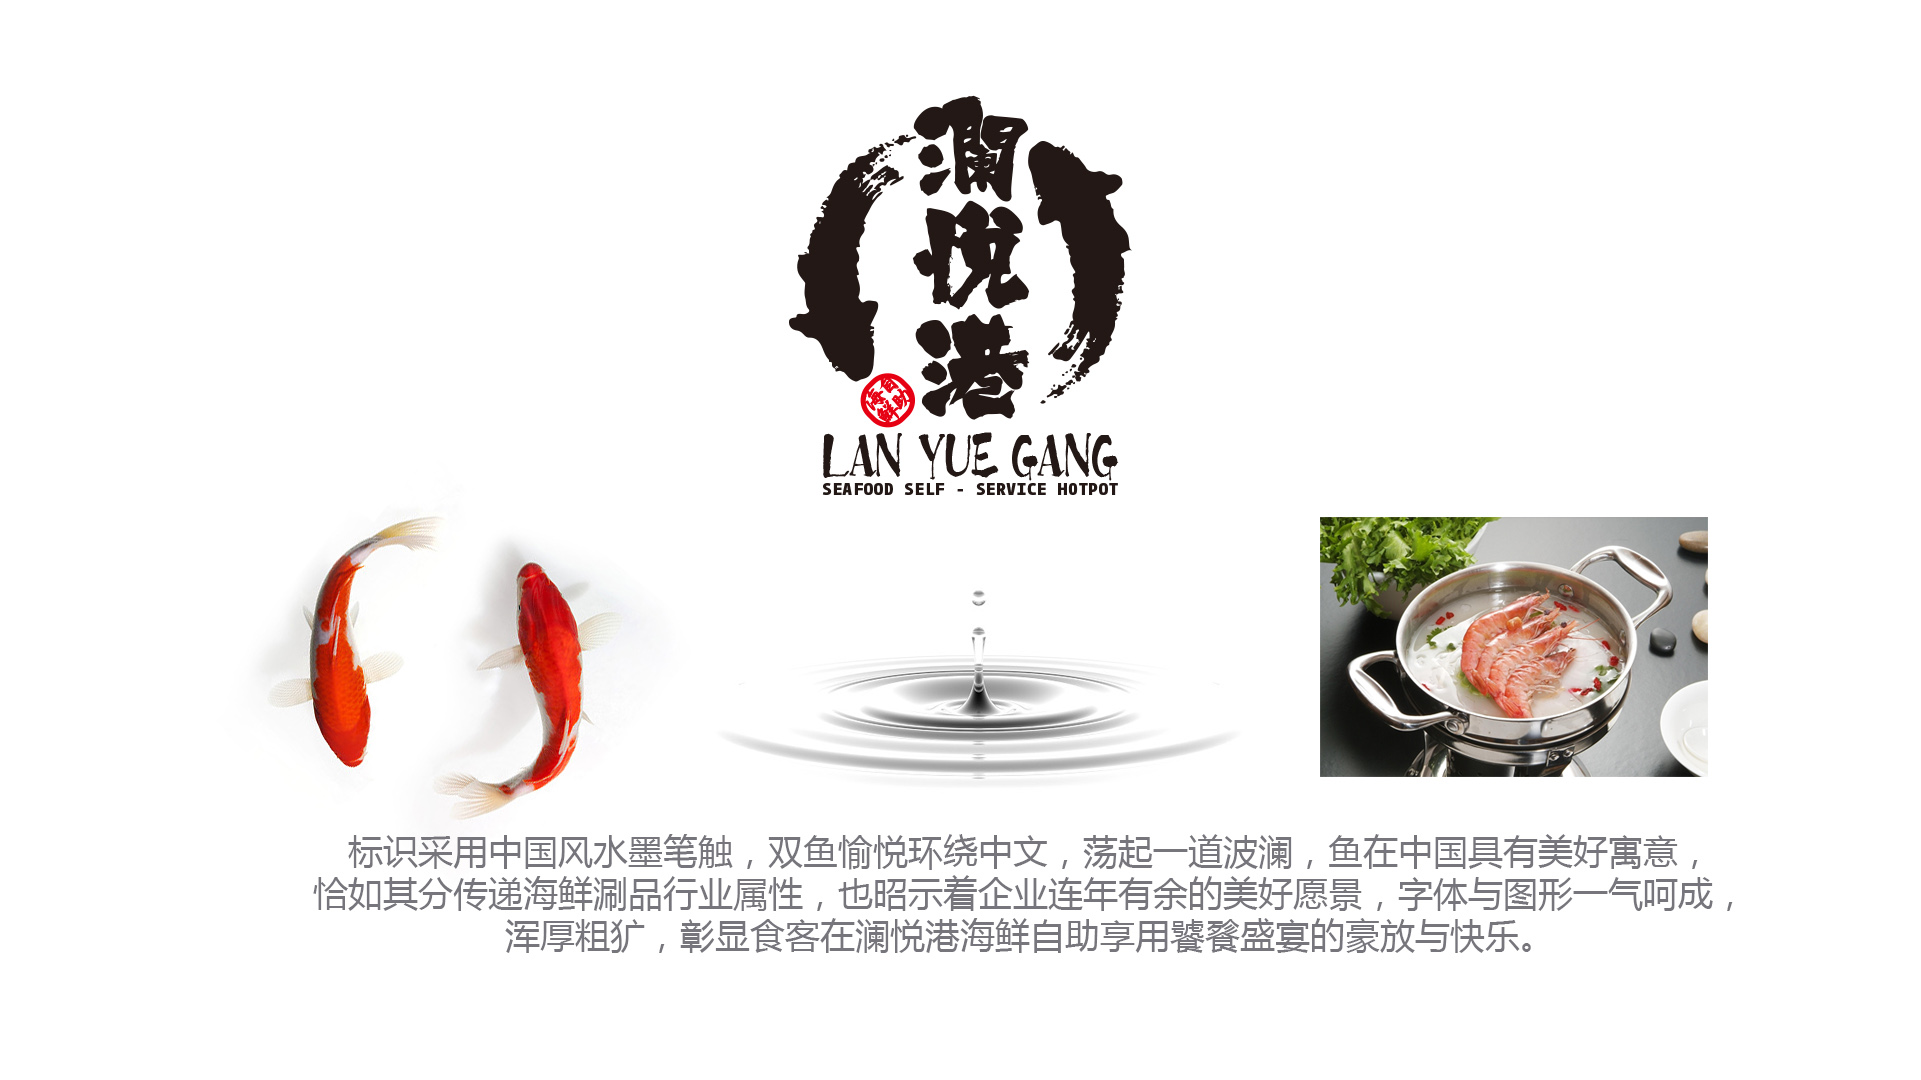 澜悦港海鲜自助餐厅品牌形象设计20171224-2